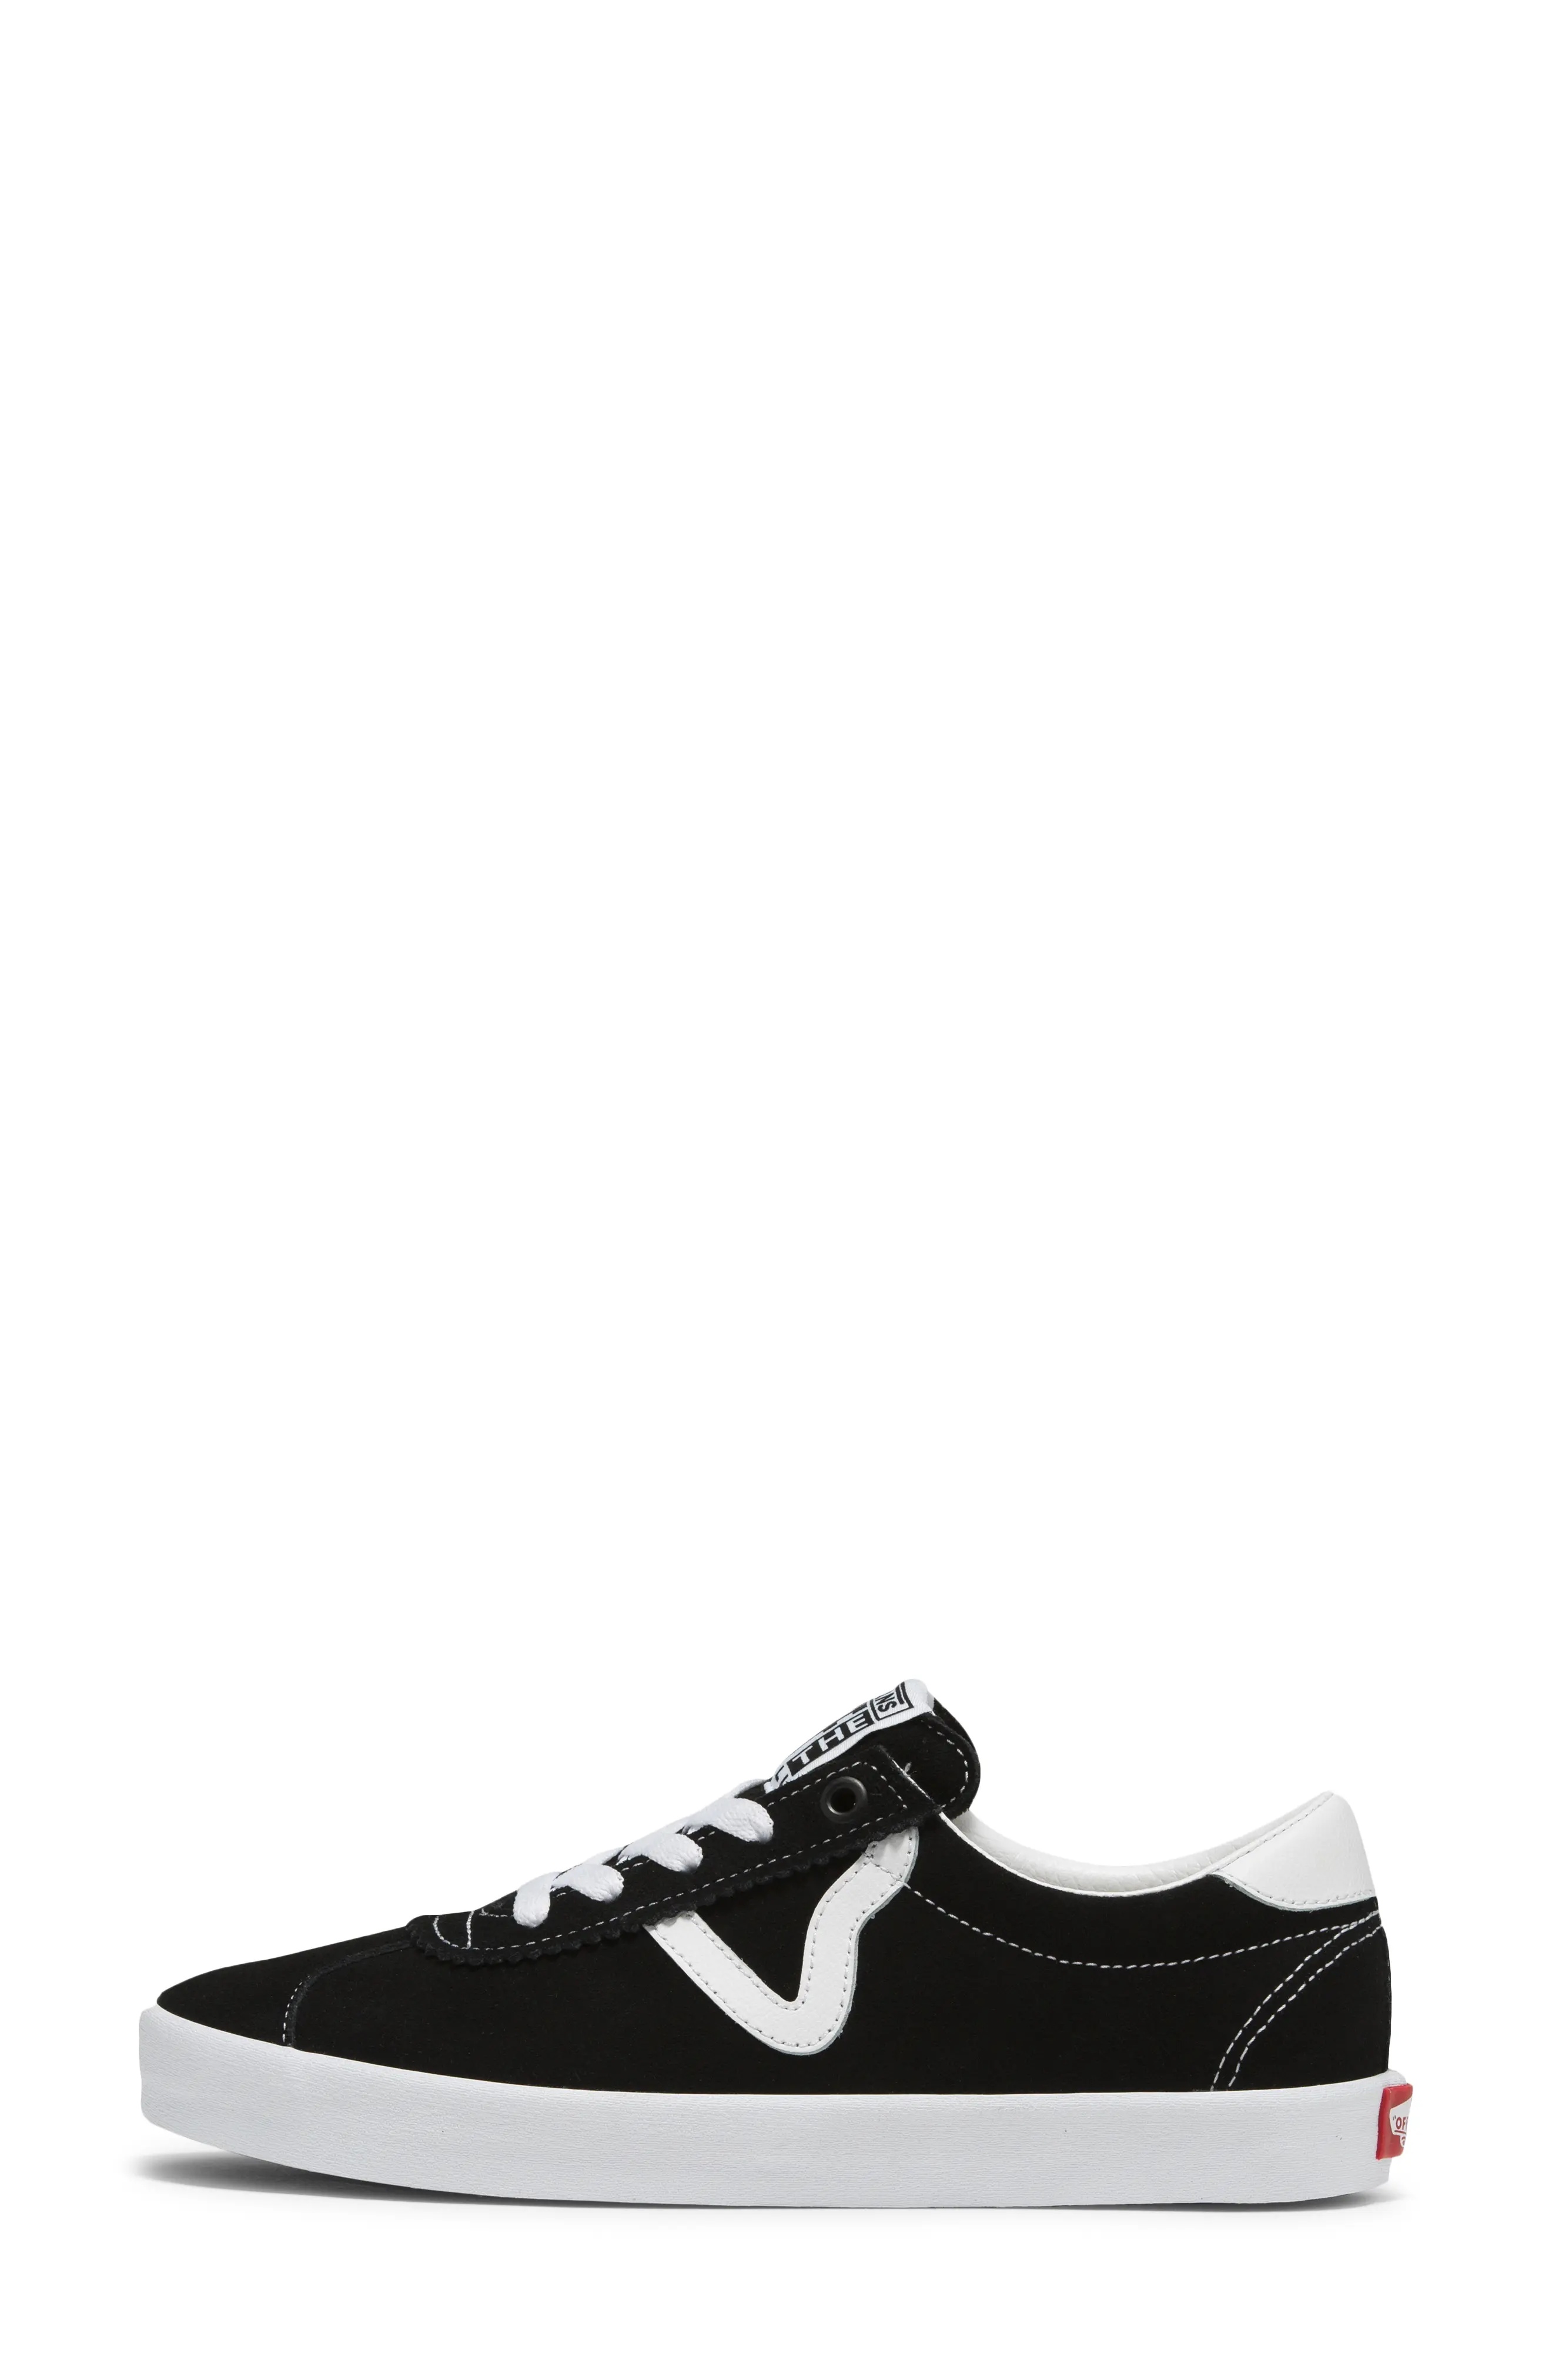 Sport Low Sneaker in Black/White - 4